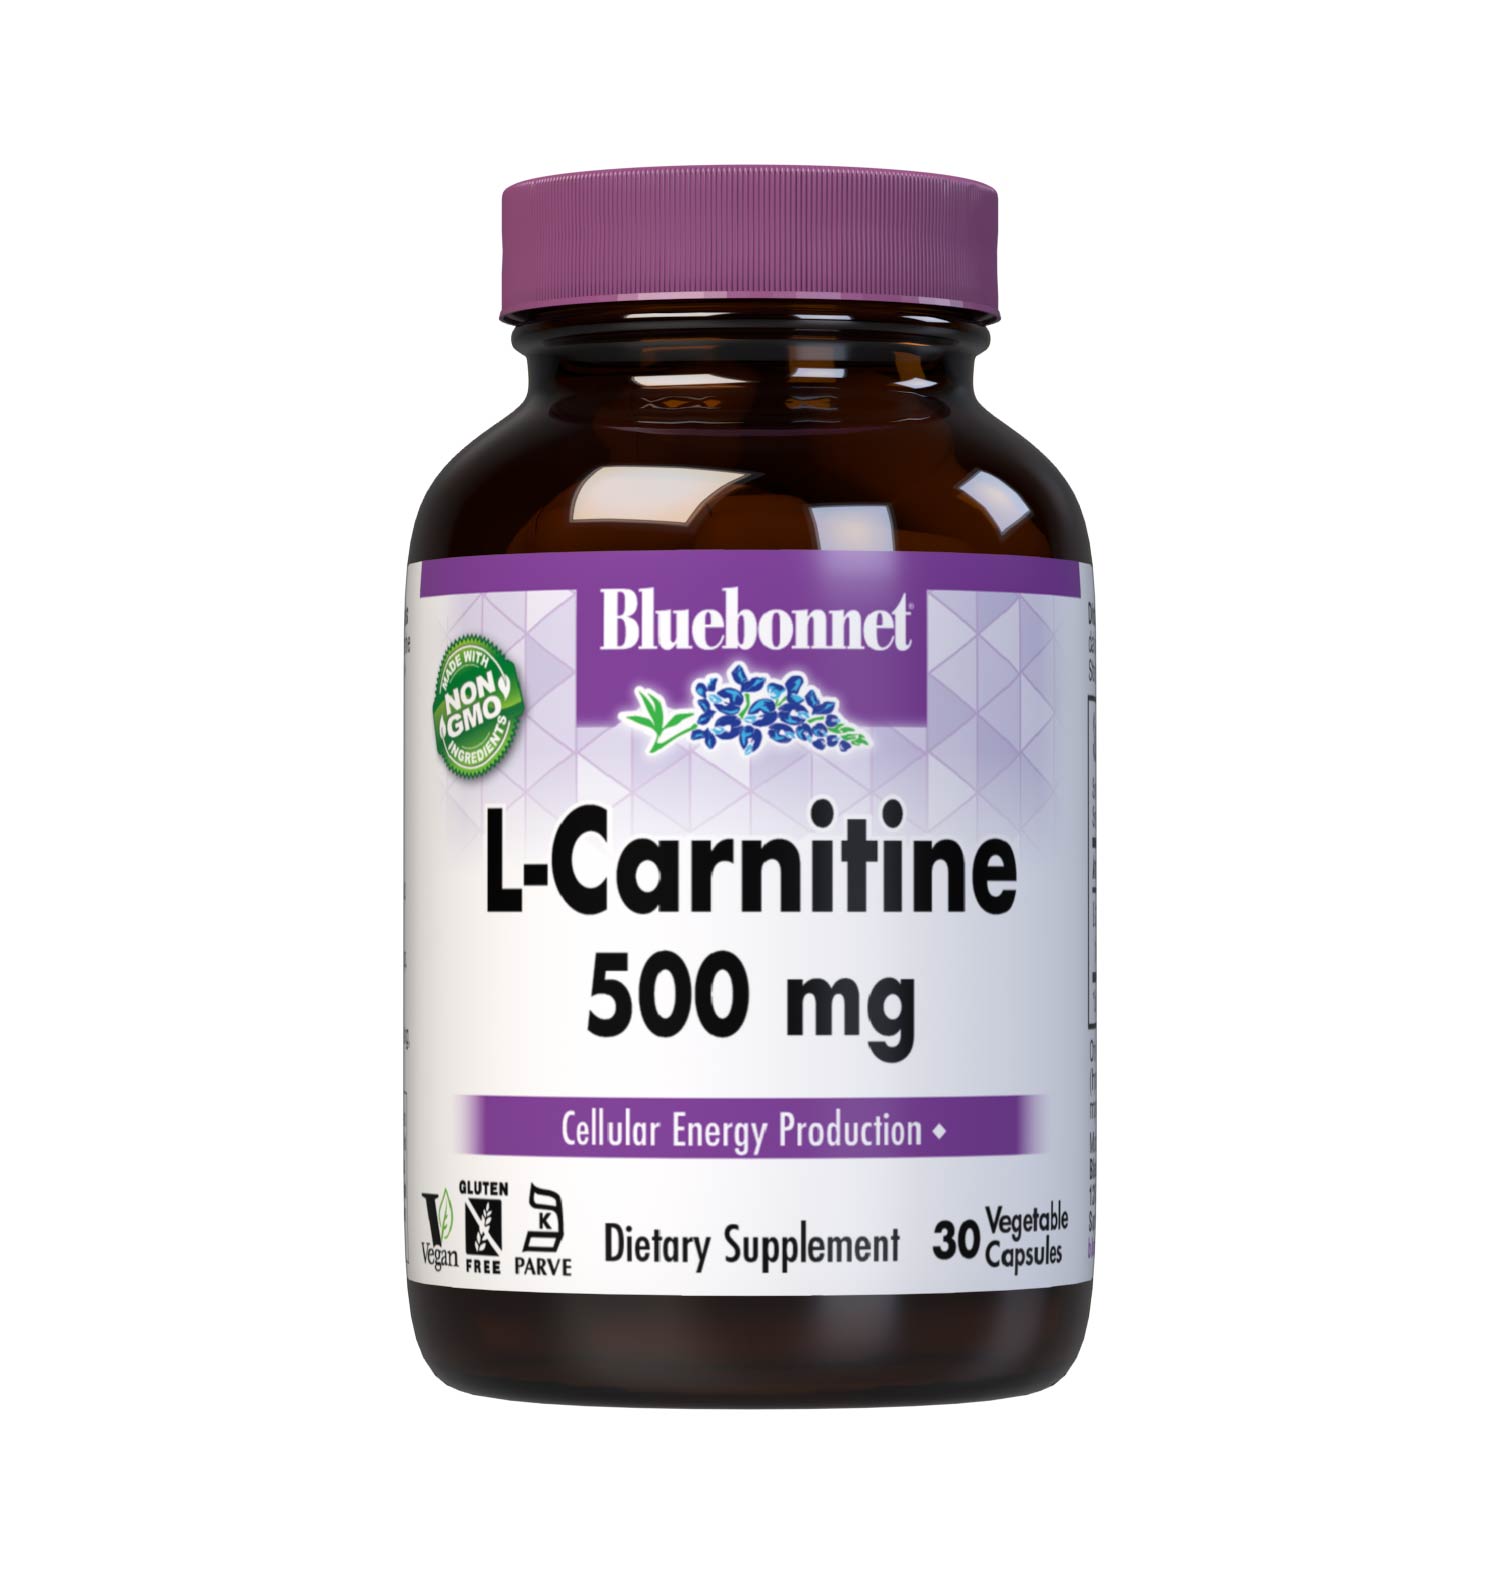 L-CARNITINE 500 mg